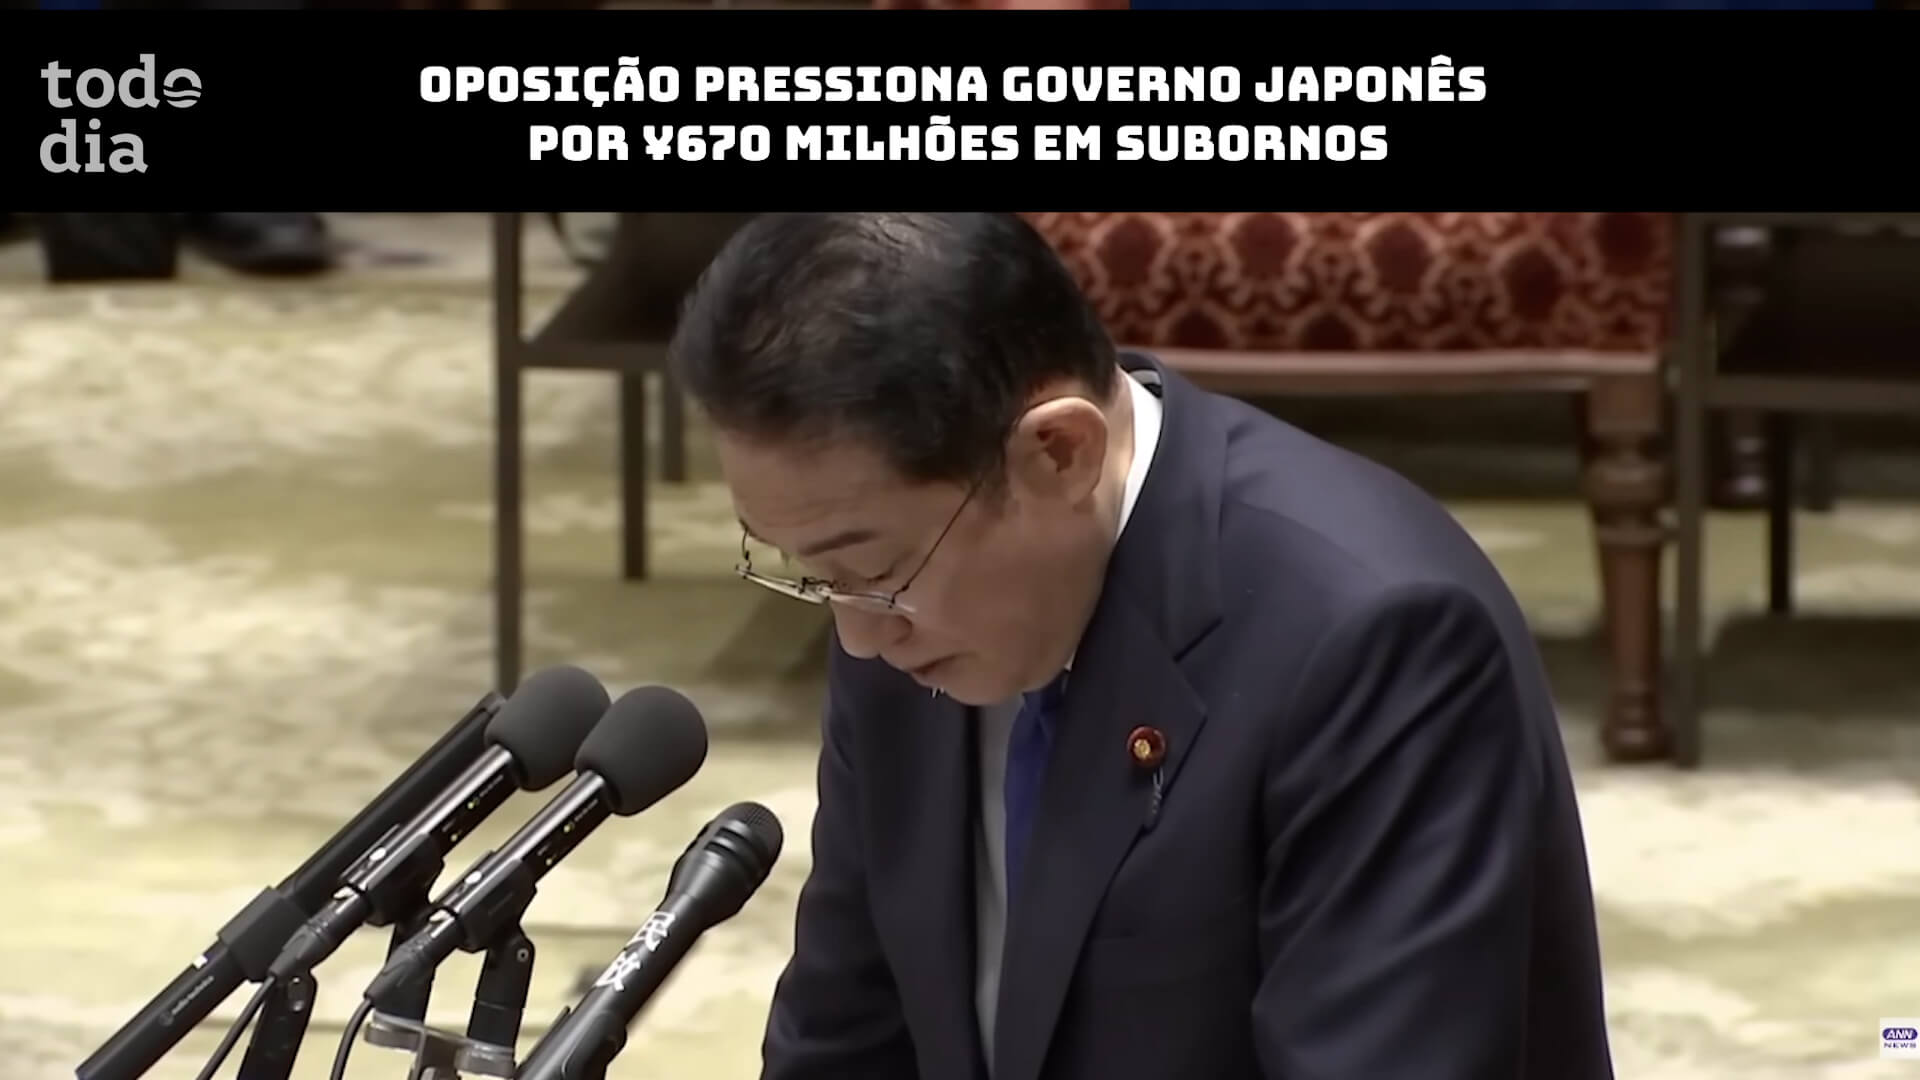 Oposição pressiona governo japonês por ¥670 milhões em subornos